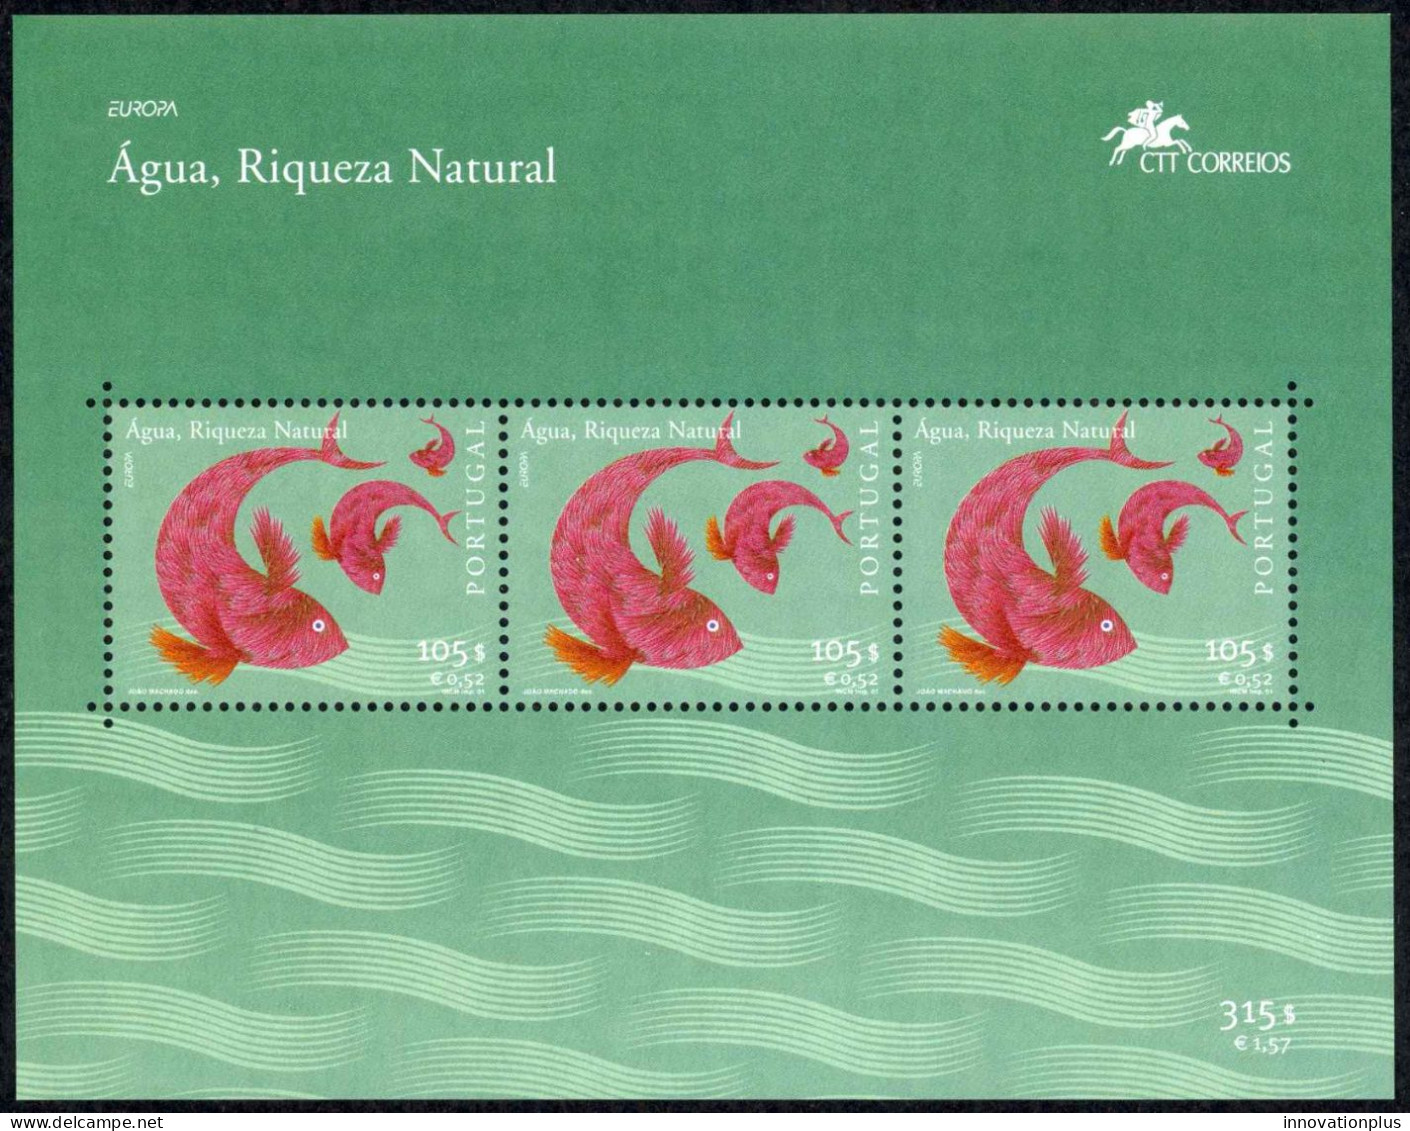 Portugal Sc# 2421a MNH Souvenir Sheet 2001 Europa - Neufs